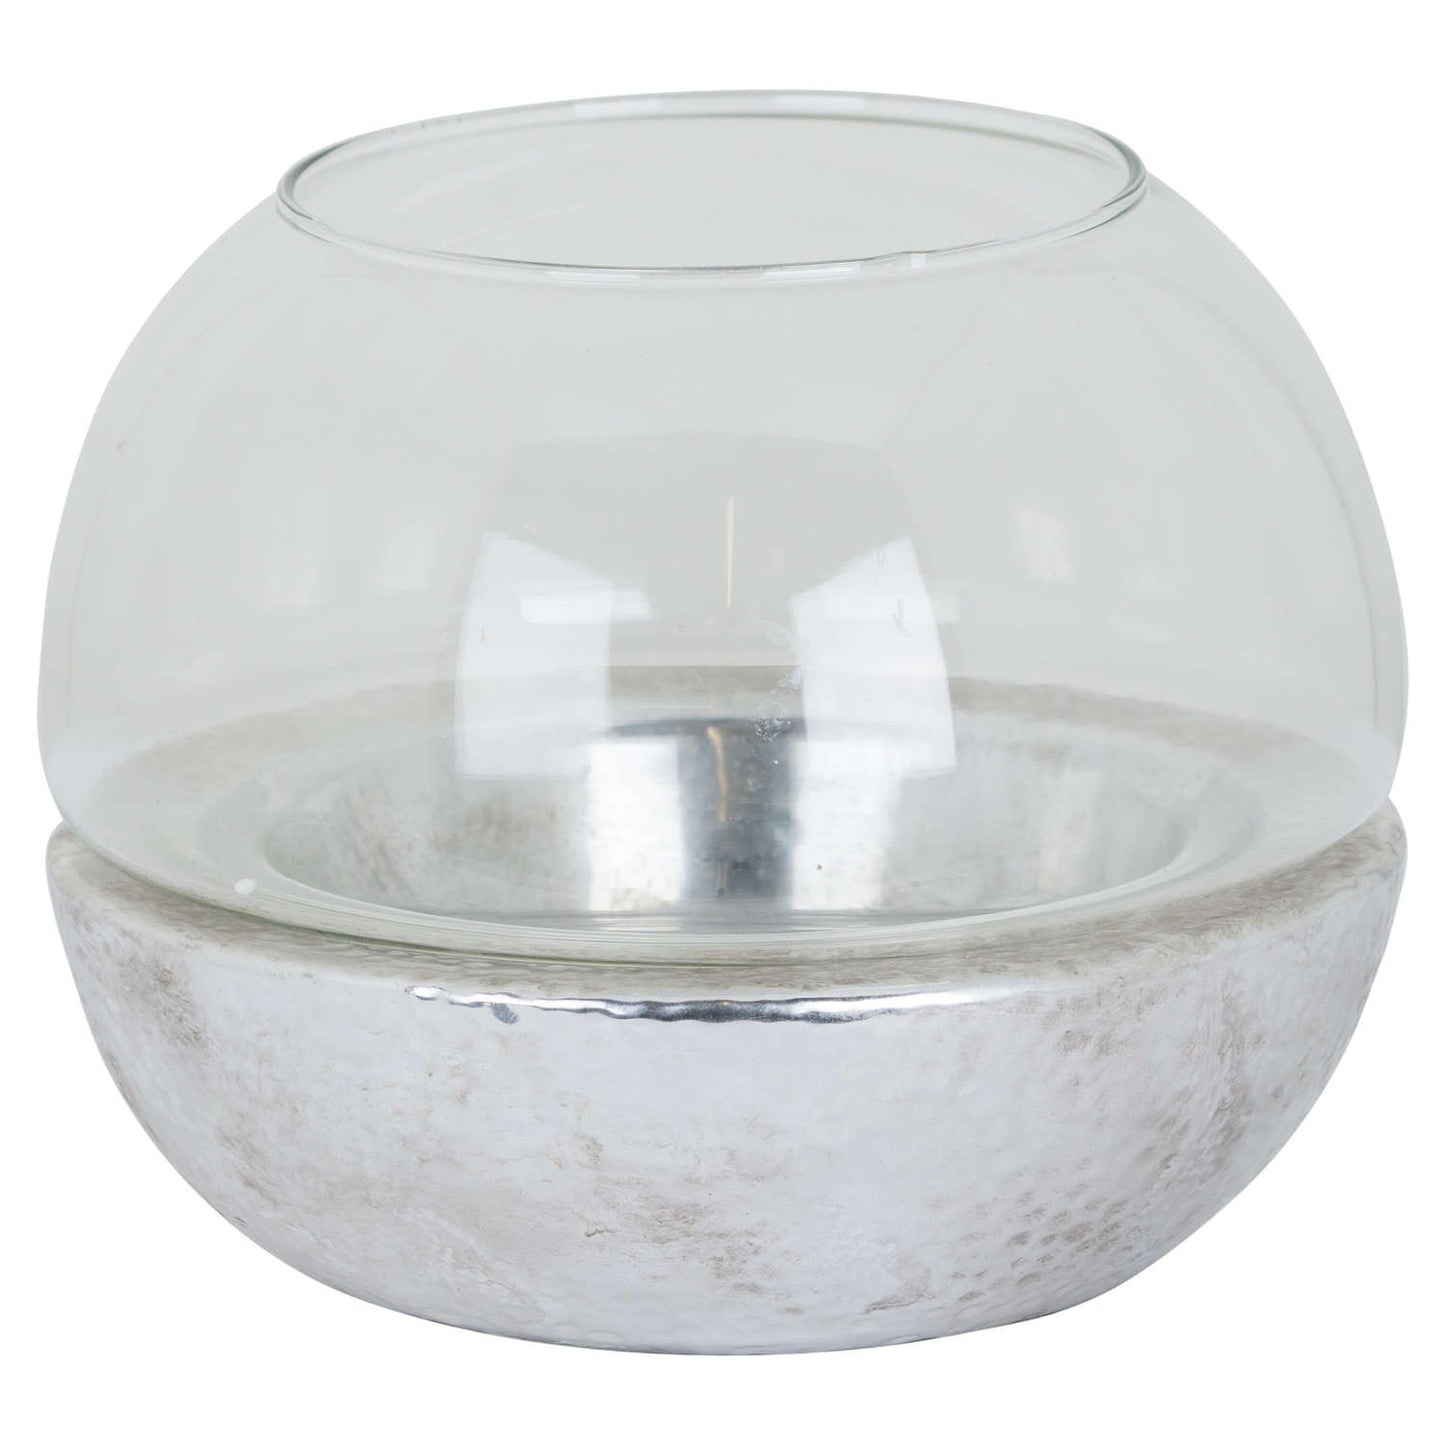 Metallic Ceramic Spherical Hurricane Lantern